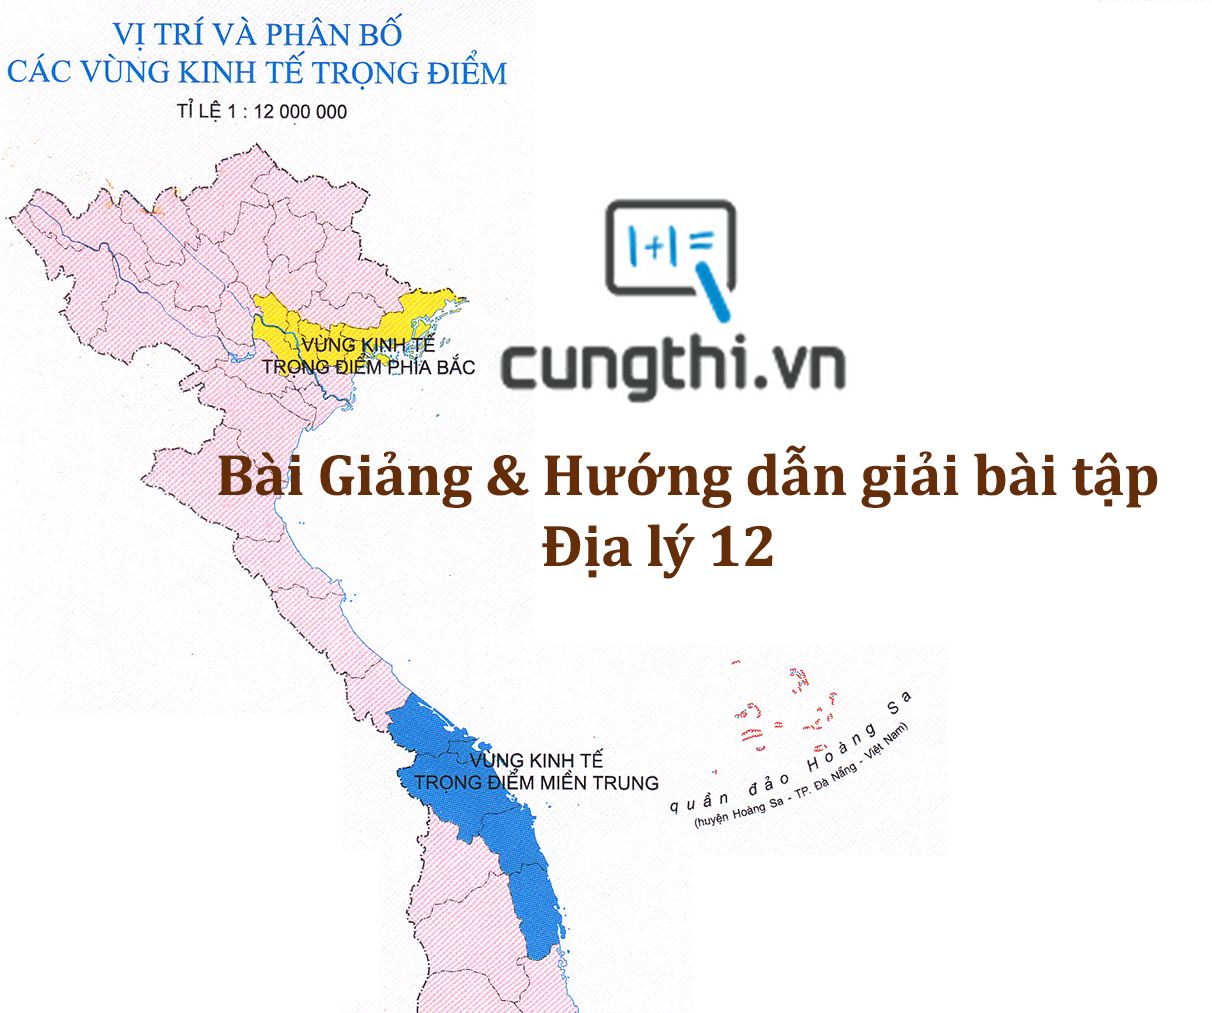 Bài giảng và hướng dẫn giải bài tập bài 3. Thực hành vẽ bản đồ Việt Nam.